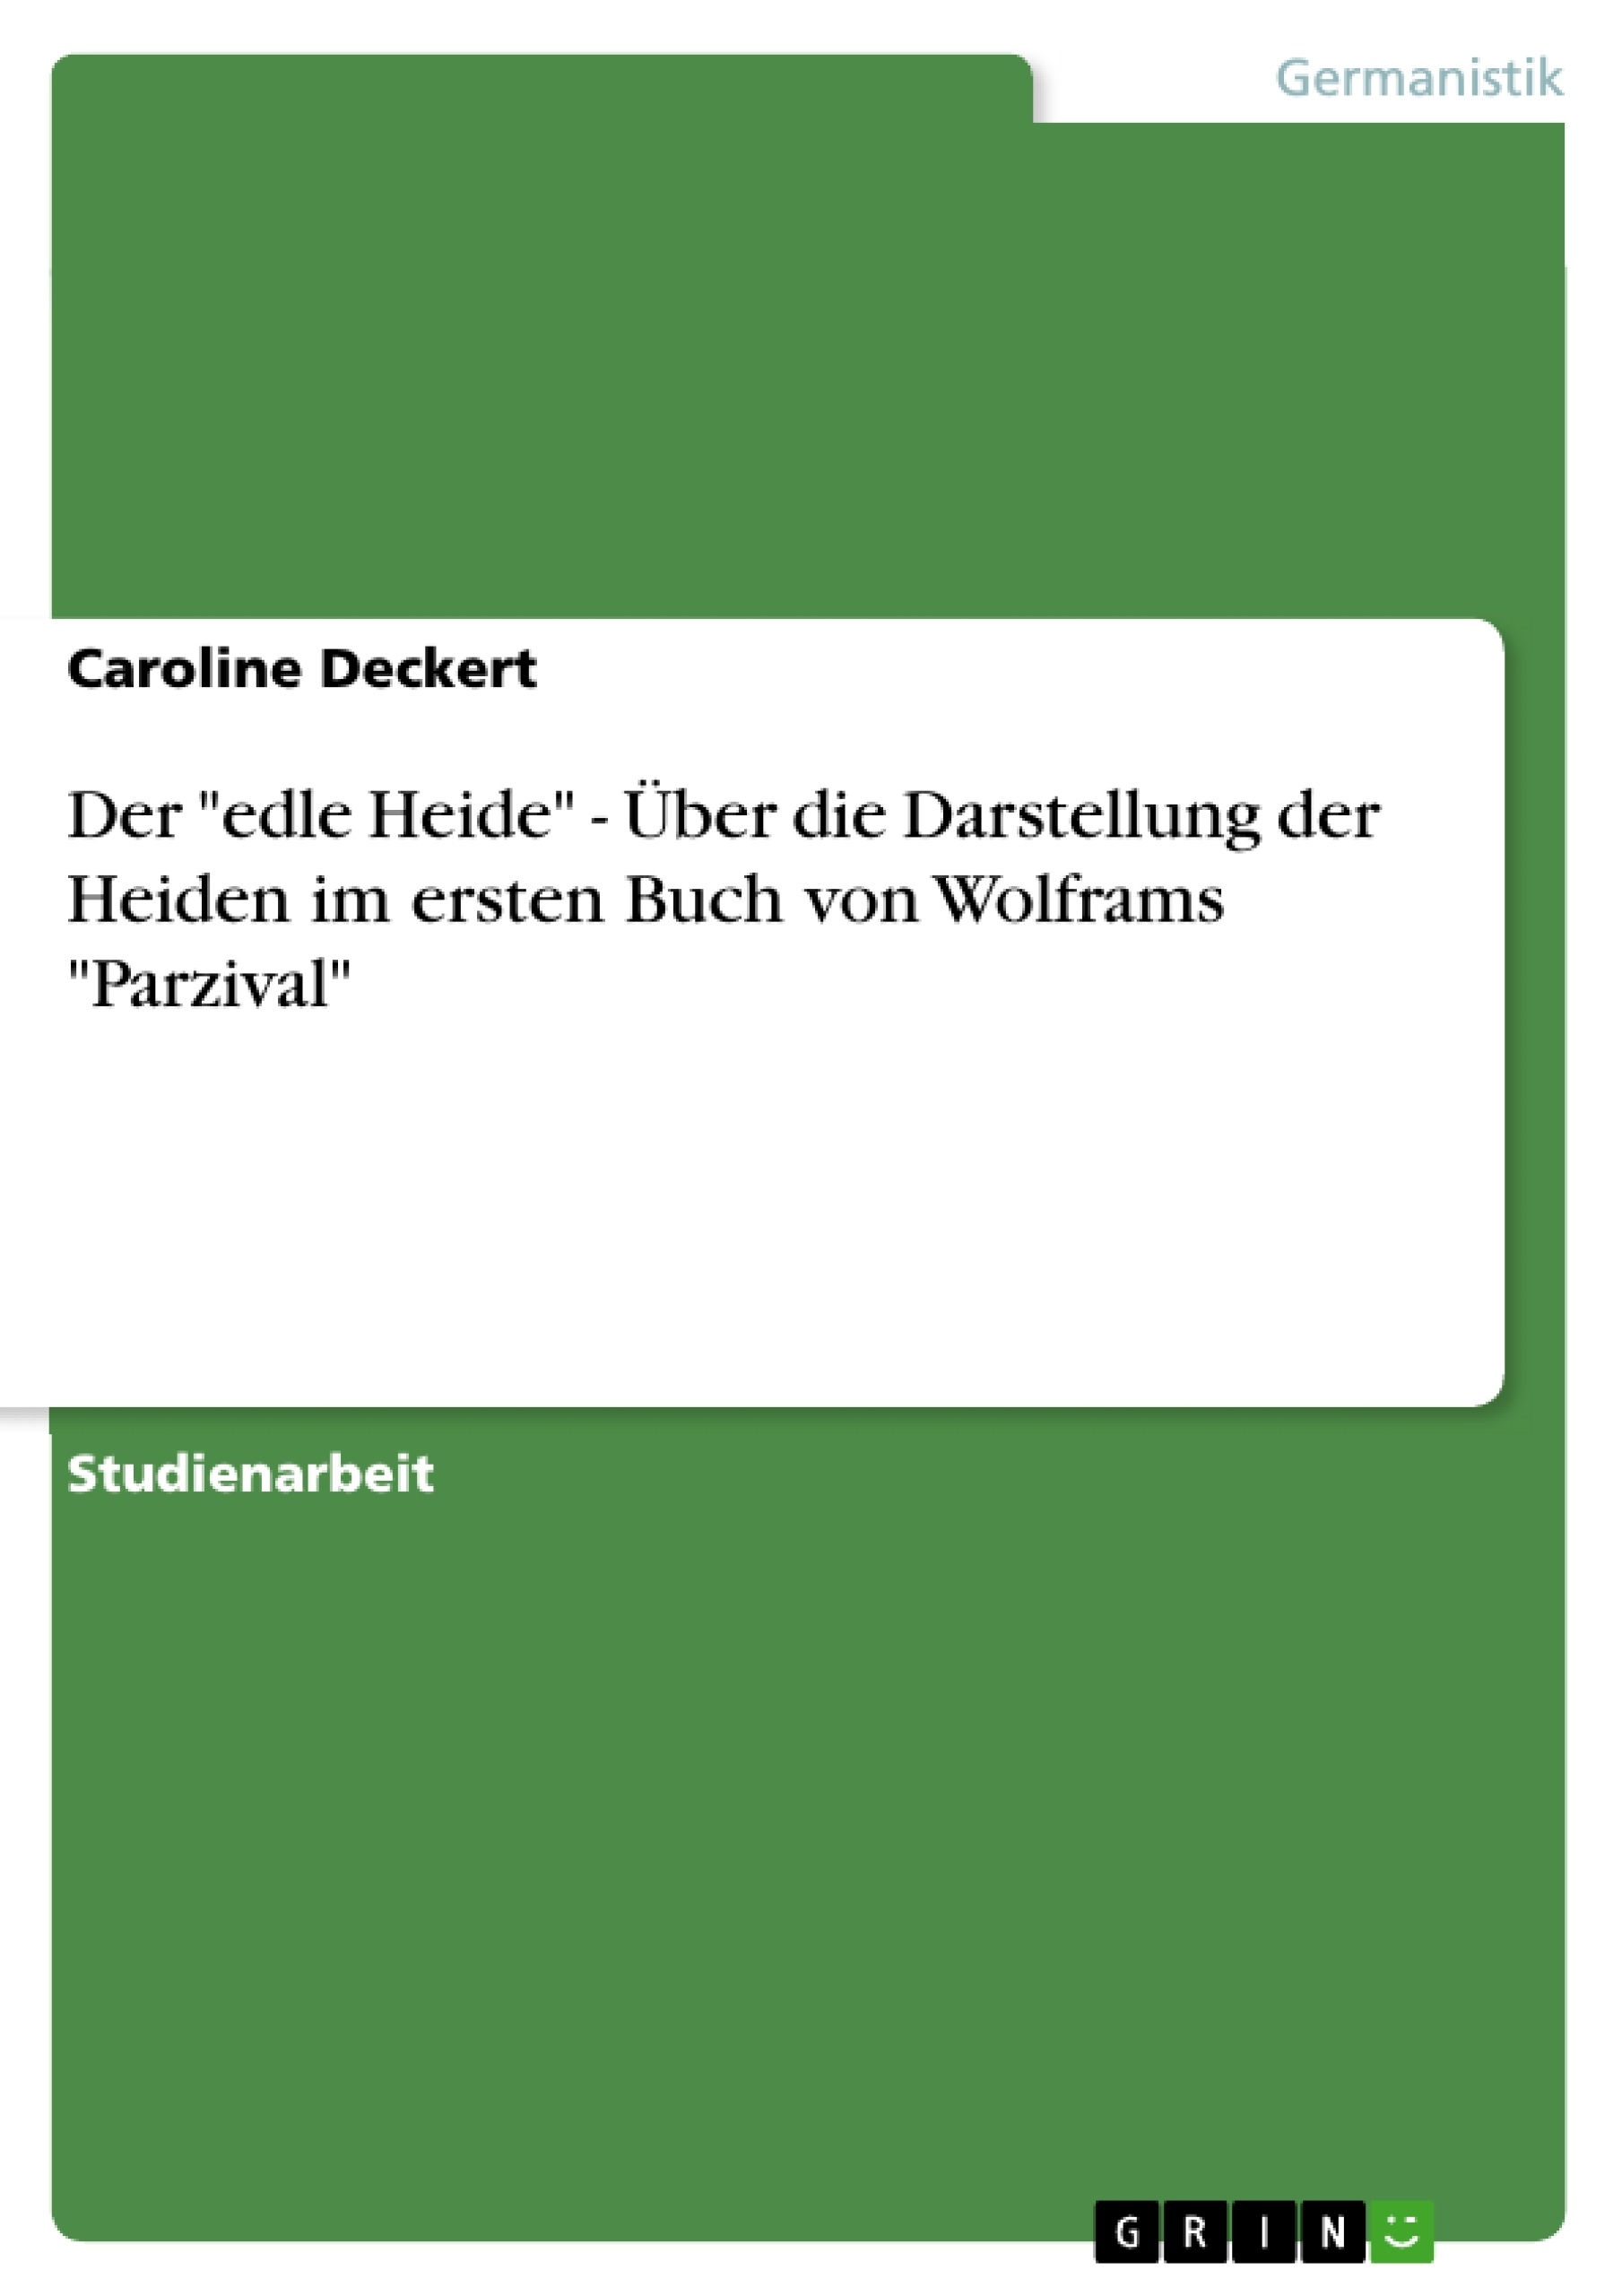 Título: Der "edle Heide" - Über die Darstellung der Heiden im ersten Buch von Wolframs "Parzival"